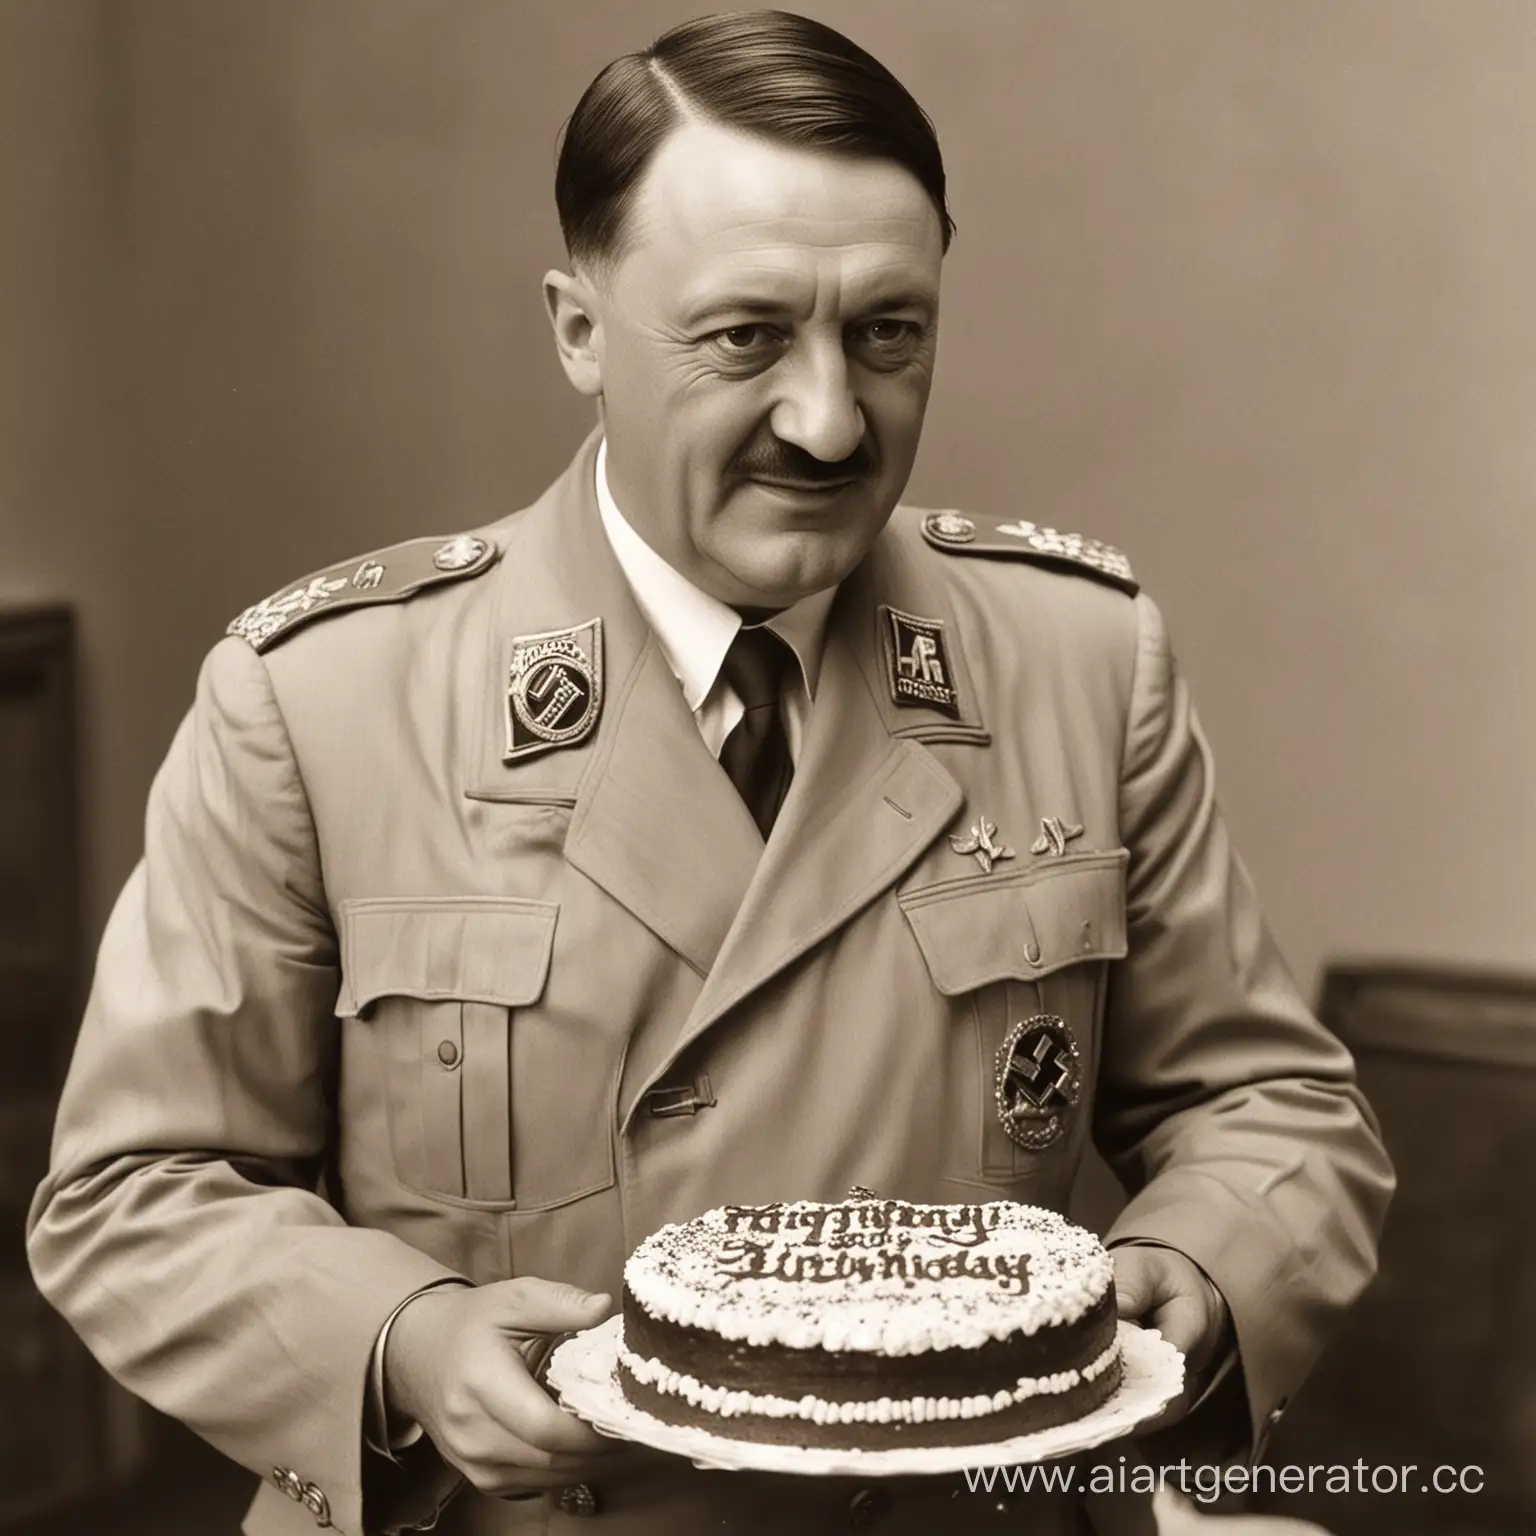 Гитлер у которого в руках торт с надписью:" Kirill Parneof" поздравляет с днем рождением